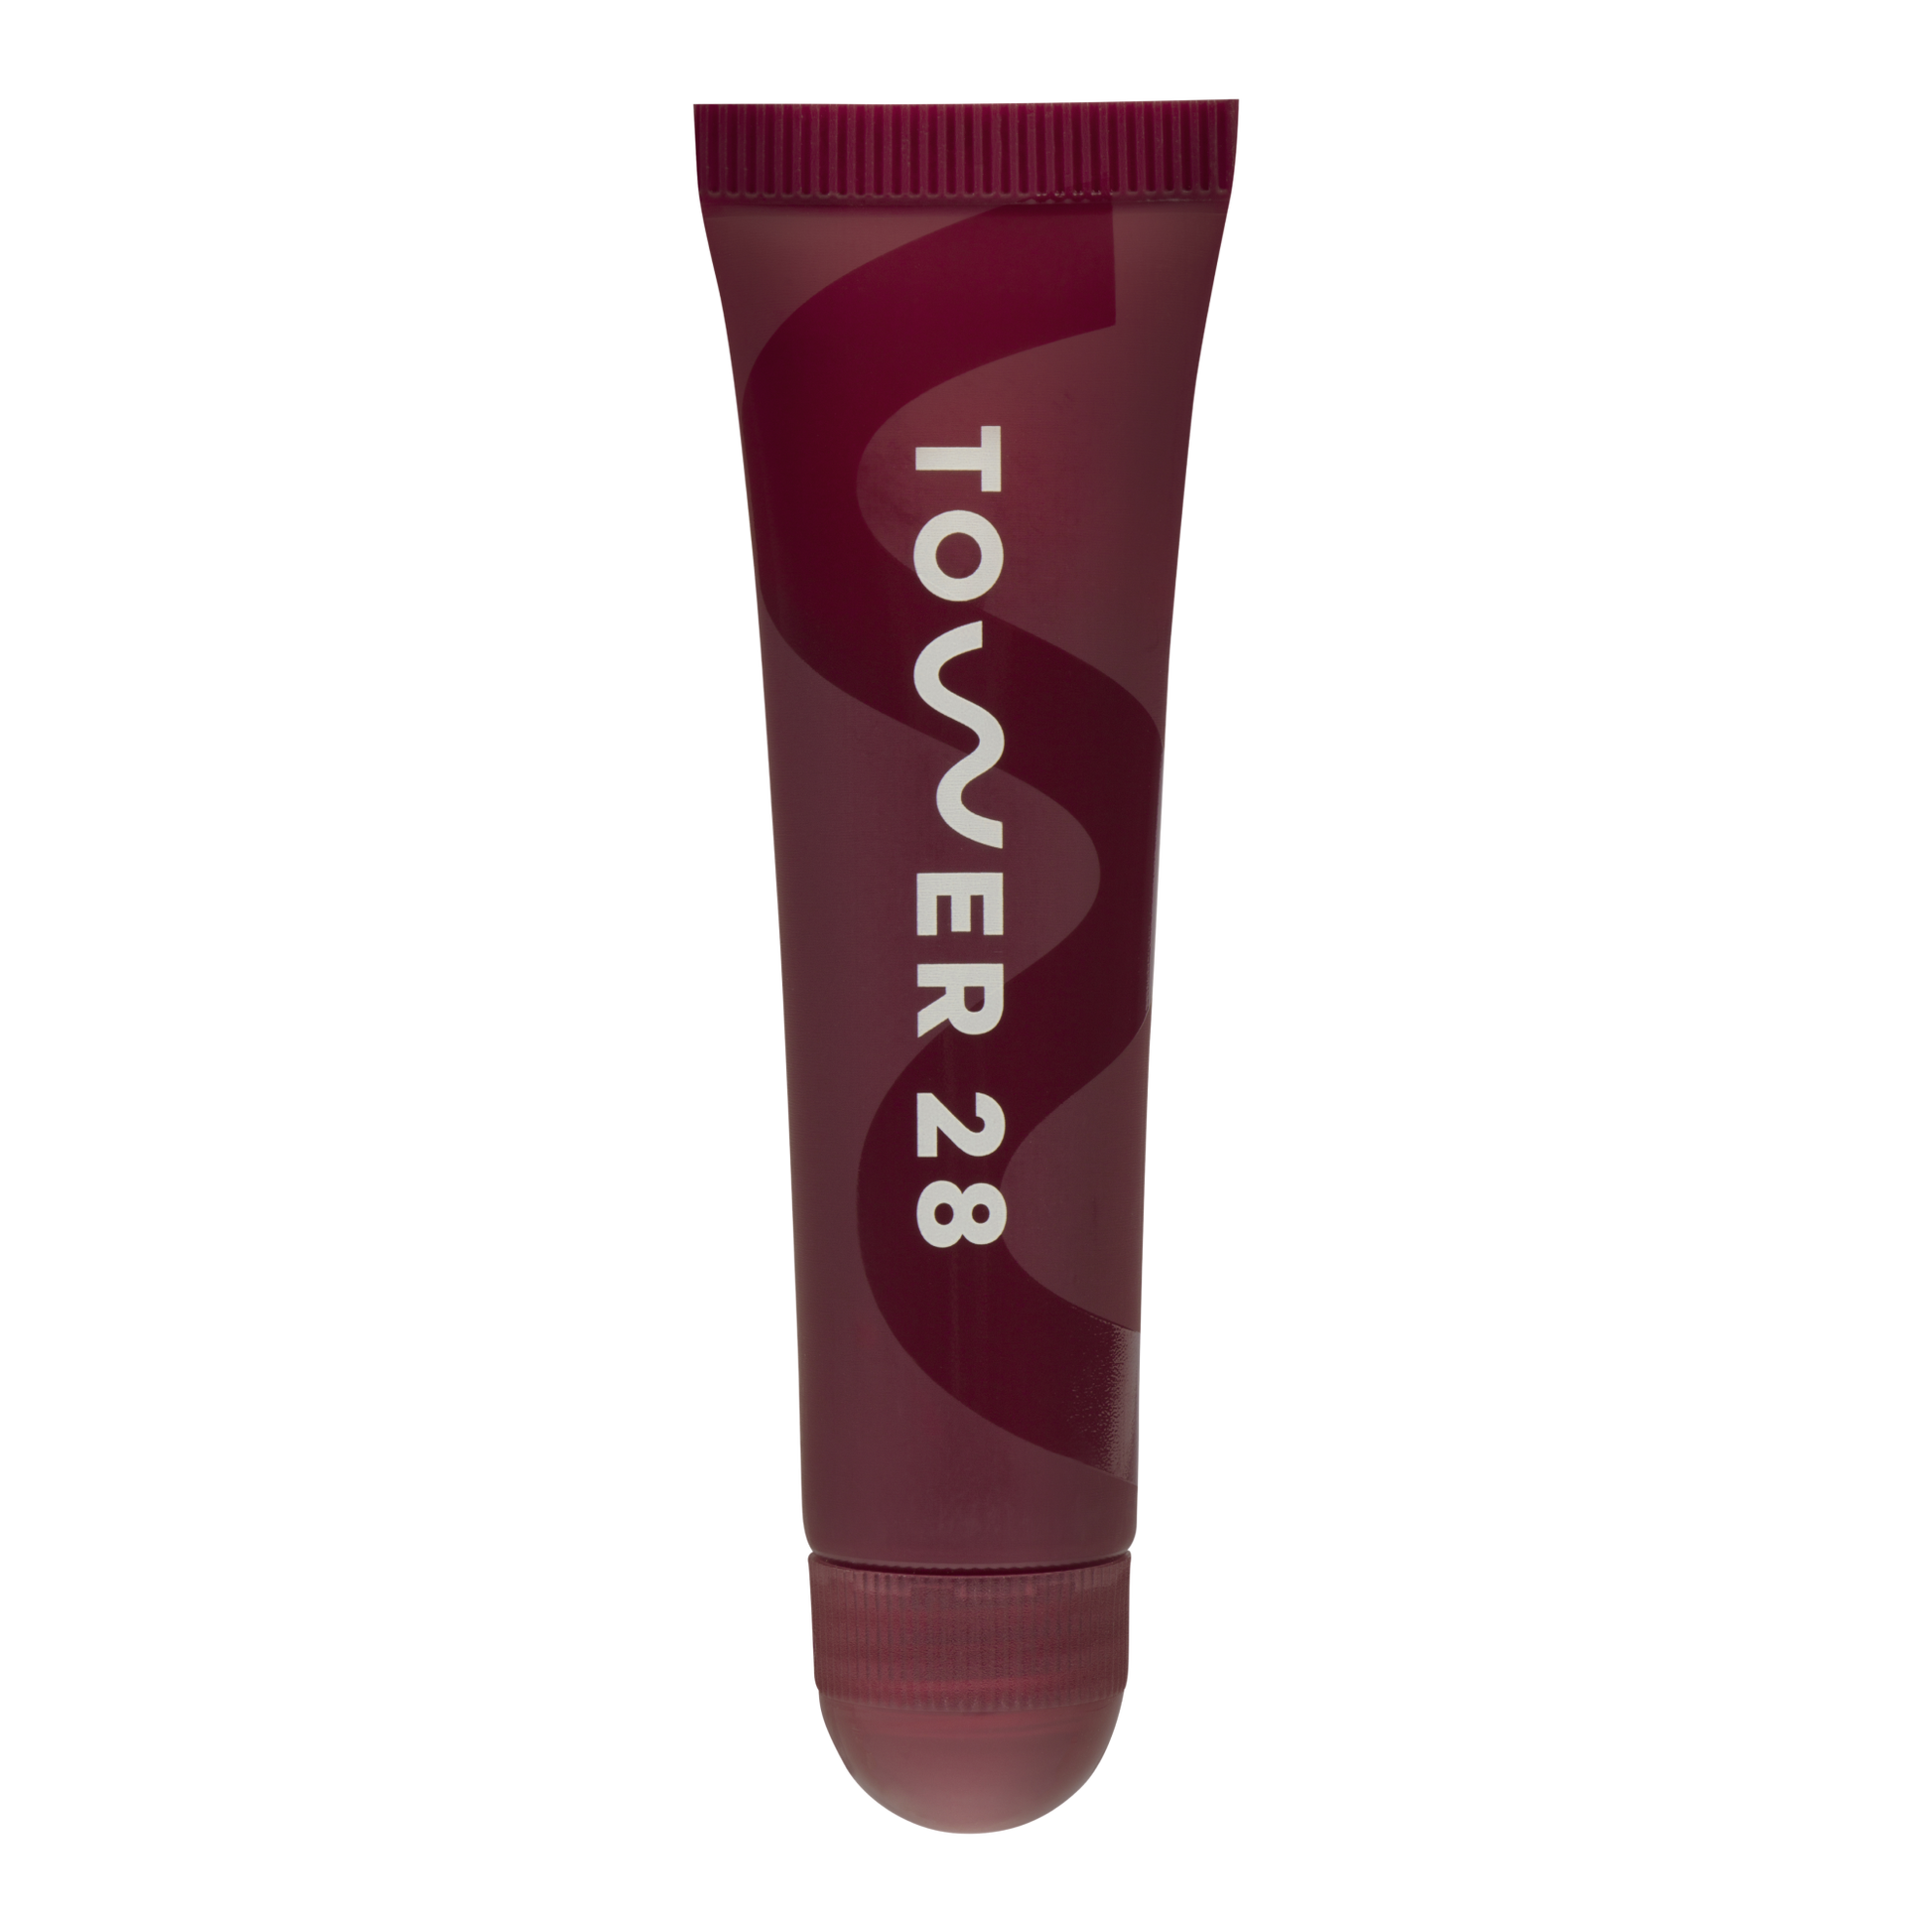 The Tower 28 Beauty LipSoftie™ Lip Treatment in the shade Ube Vanilla